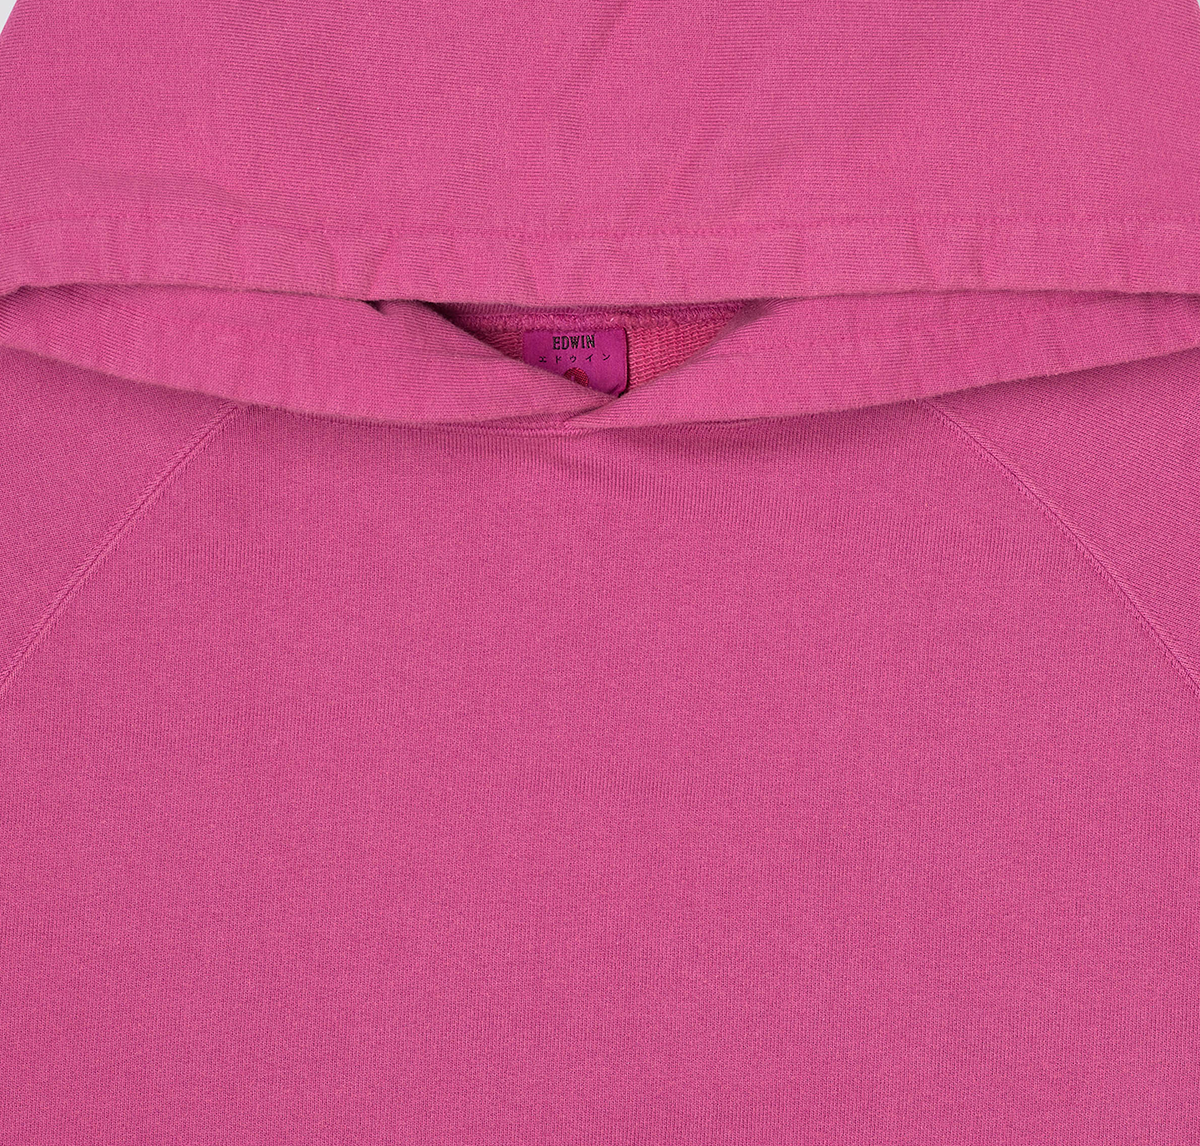 EDWIN Raglan Sleeve Hoodie - Made In Japan - Bo Tan Pink detail